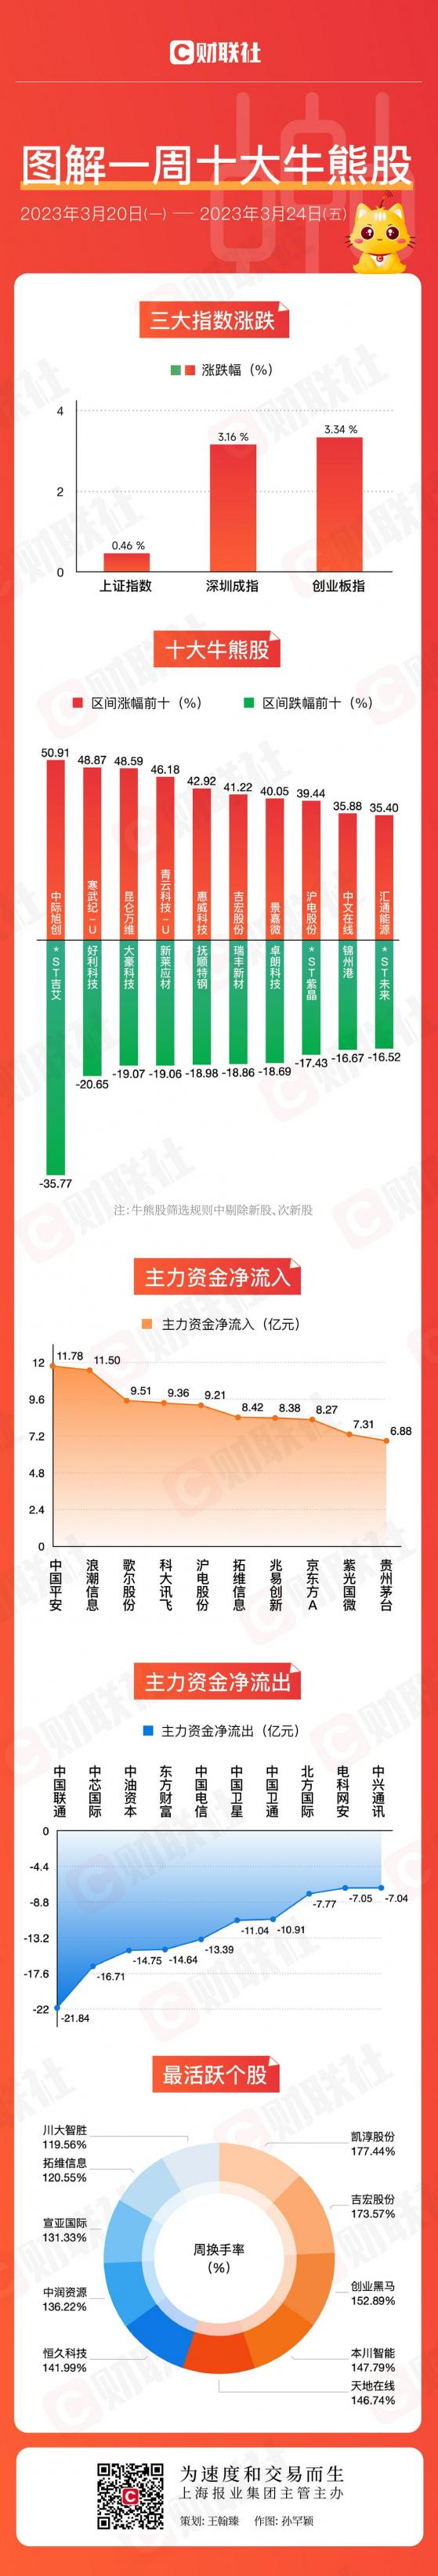 【图解牛熊股】科技股狂飙成最强主线 光通信龙头一周爆拉近51%